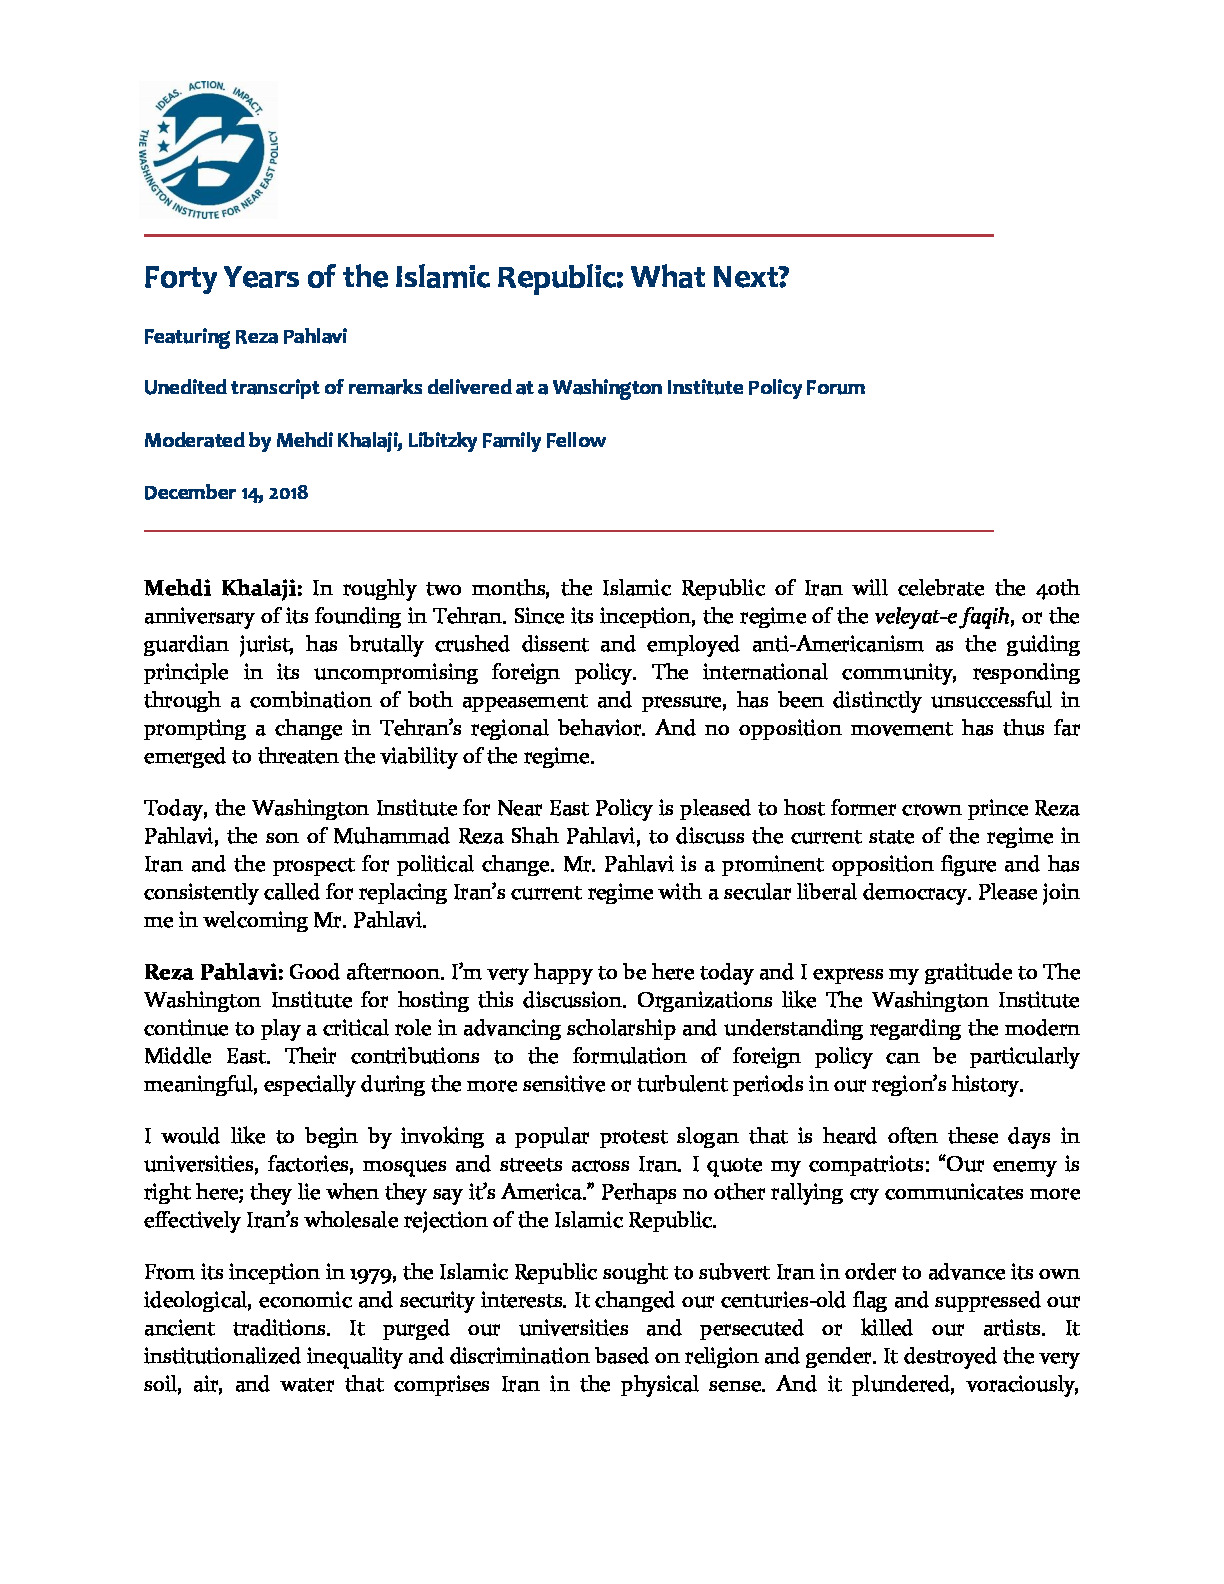 Pahlavi20181214-full-transcript.pdf